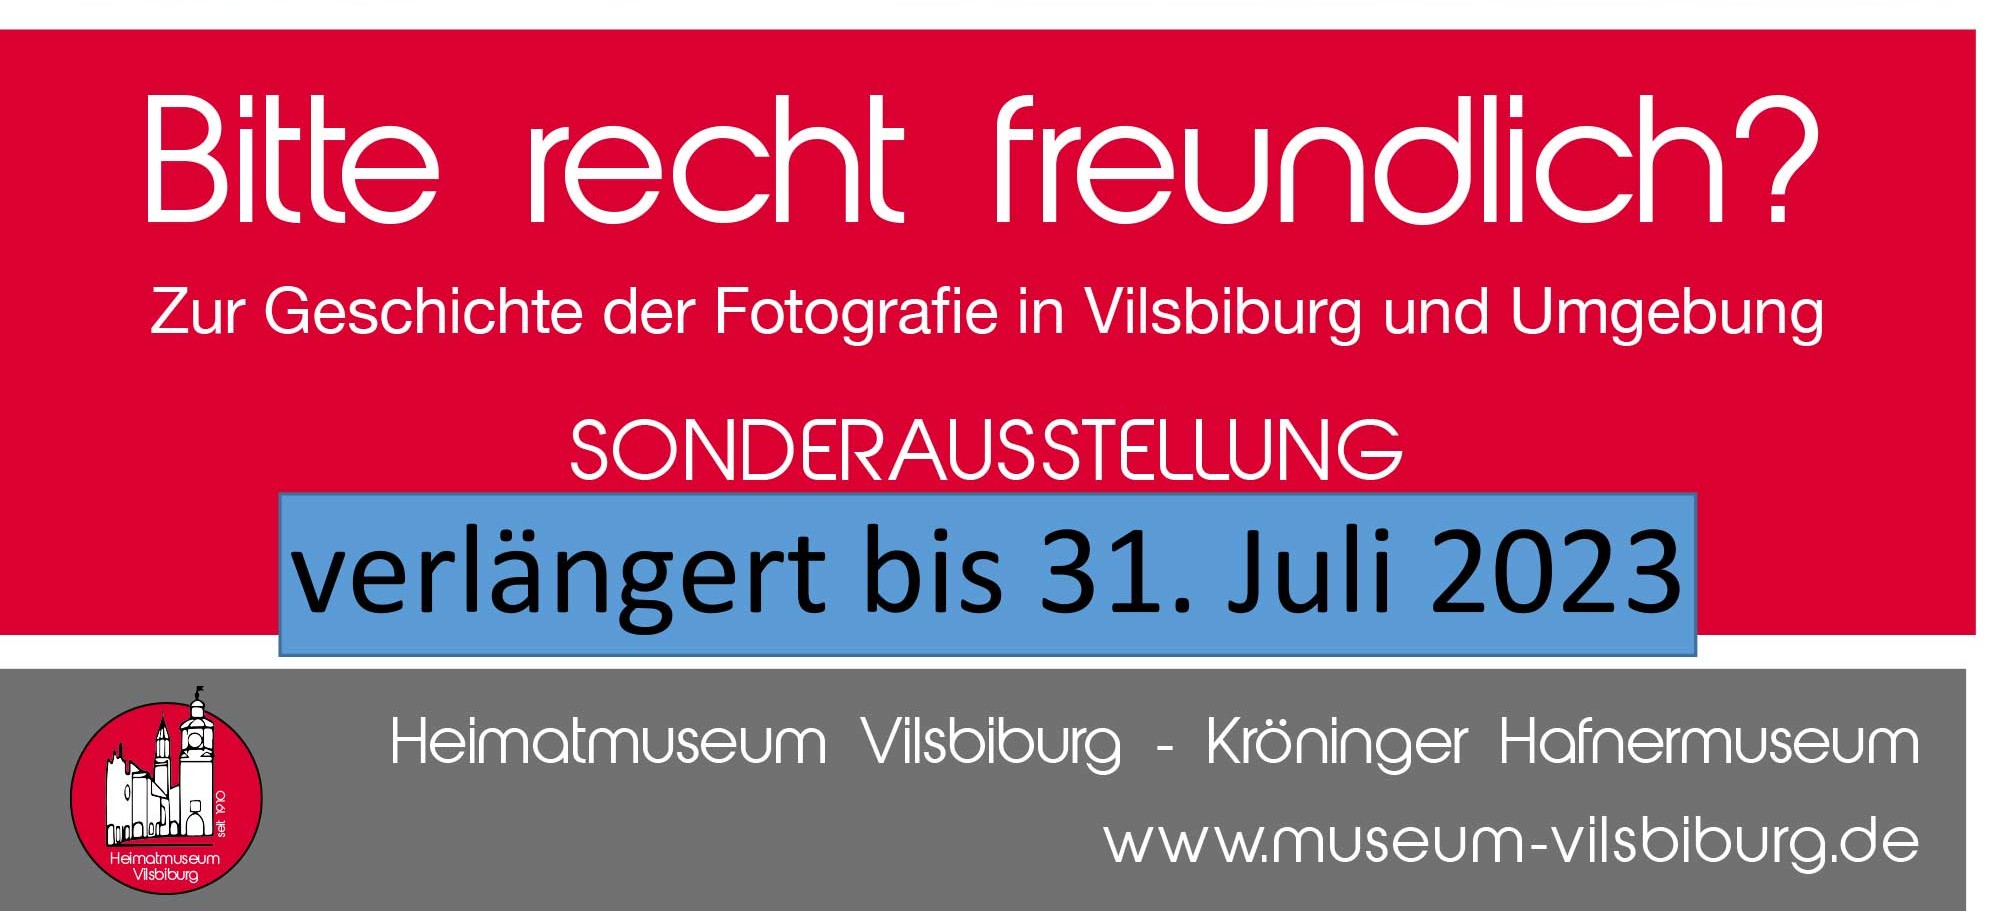 Plakat zur Sonderausstellung "Bitte recht freundlich? im Heimatmuseum Vilsbiburg